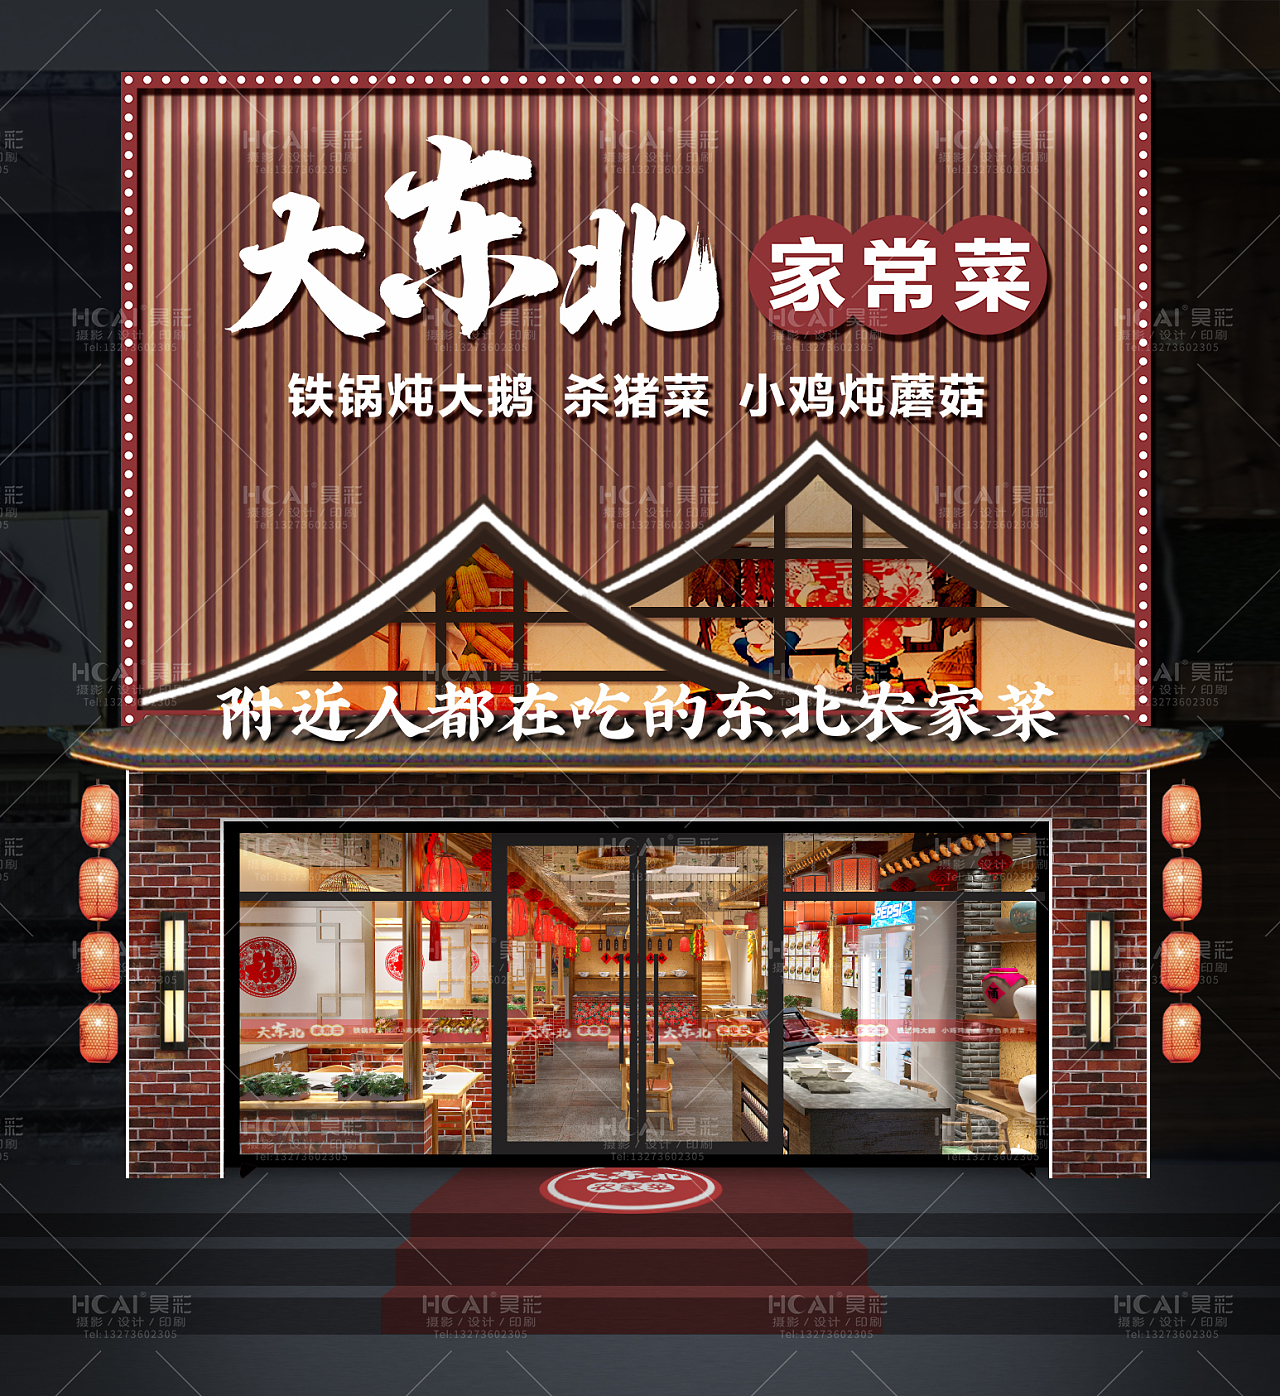 民宿饭店-CND设计网,中国设计网络首选品牌